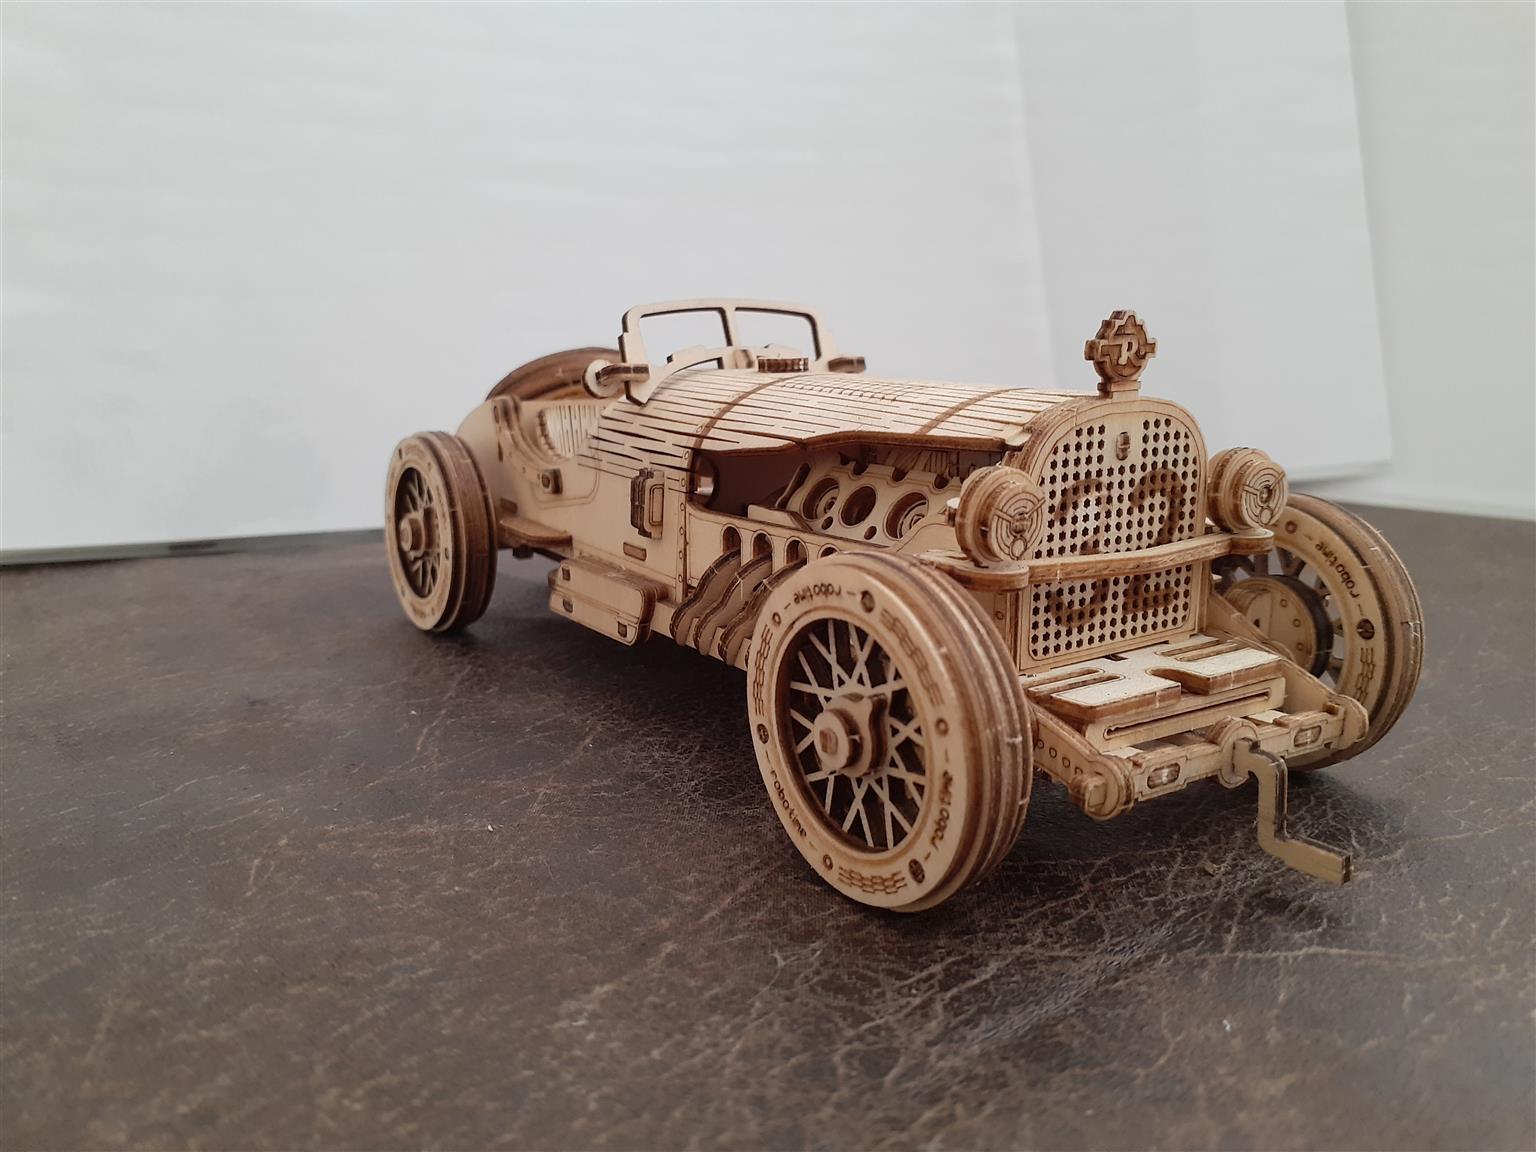 3D wood models